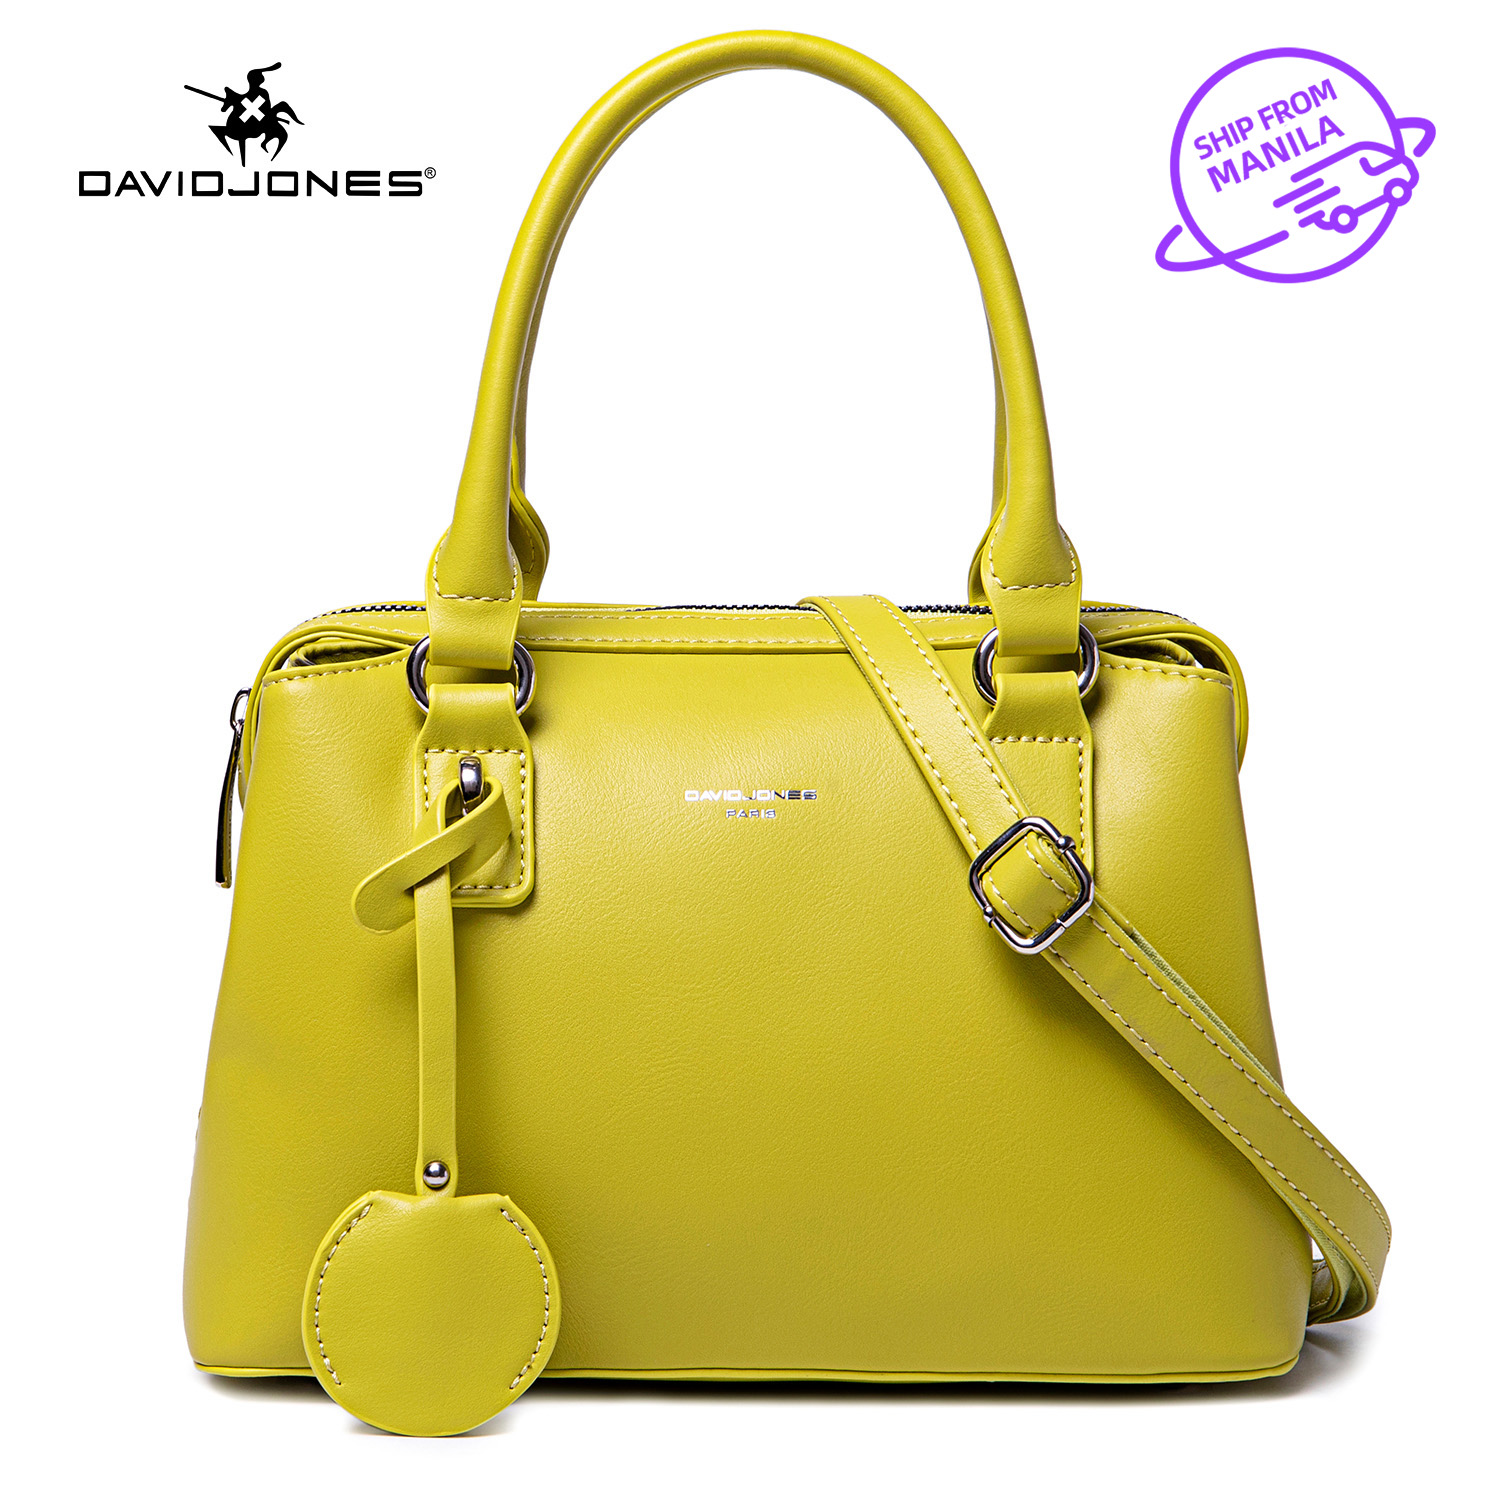 David Jones Sling Bags Handbags - Buy David Jones Sling Bags